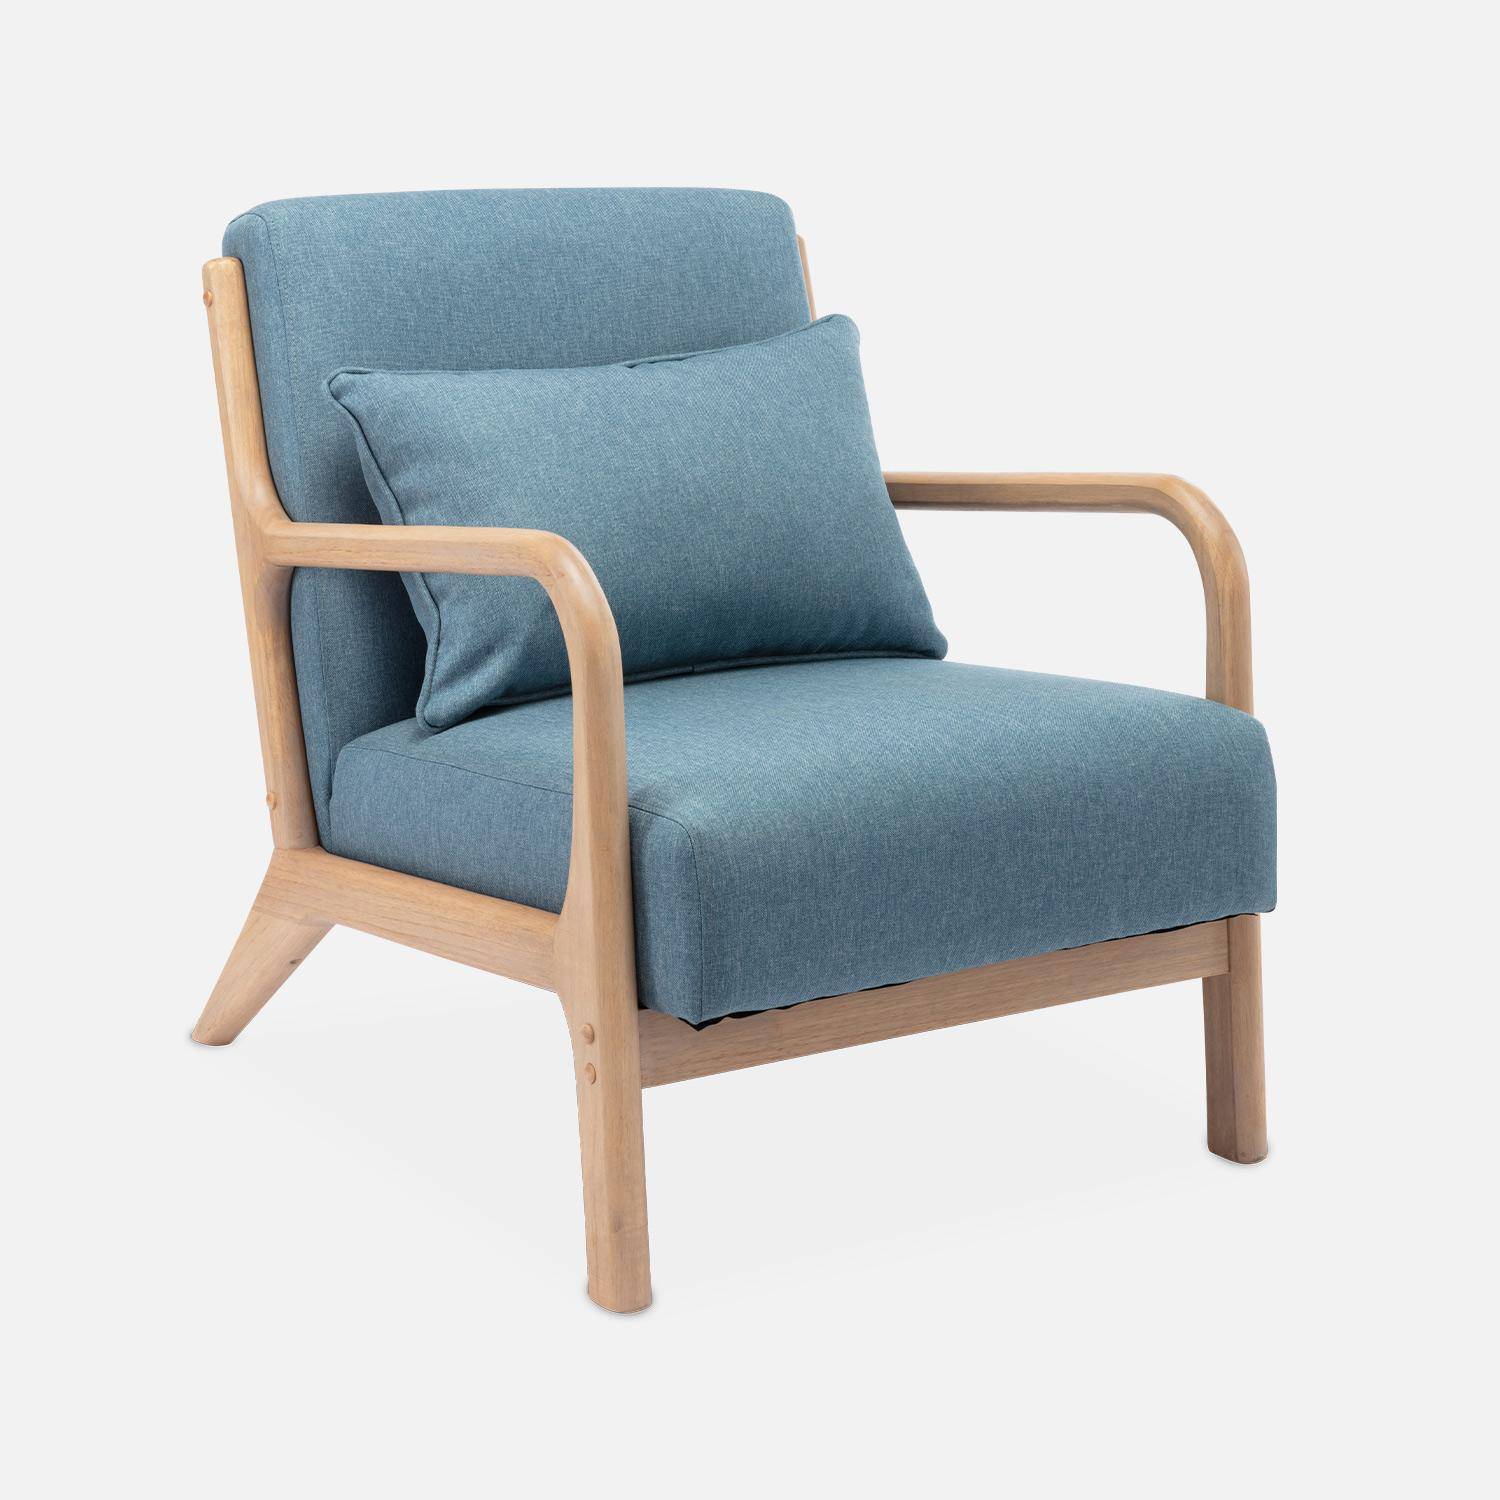 Poltrona di design in legno e tessuto, 1 seduta fissa diritta, gambe a compasso scandinave, blu Photo4